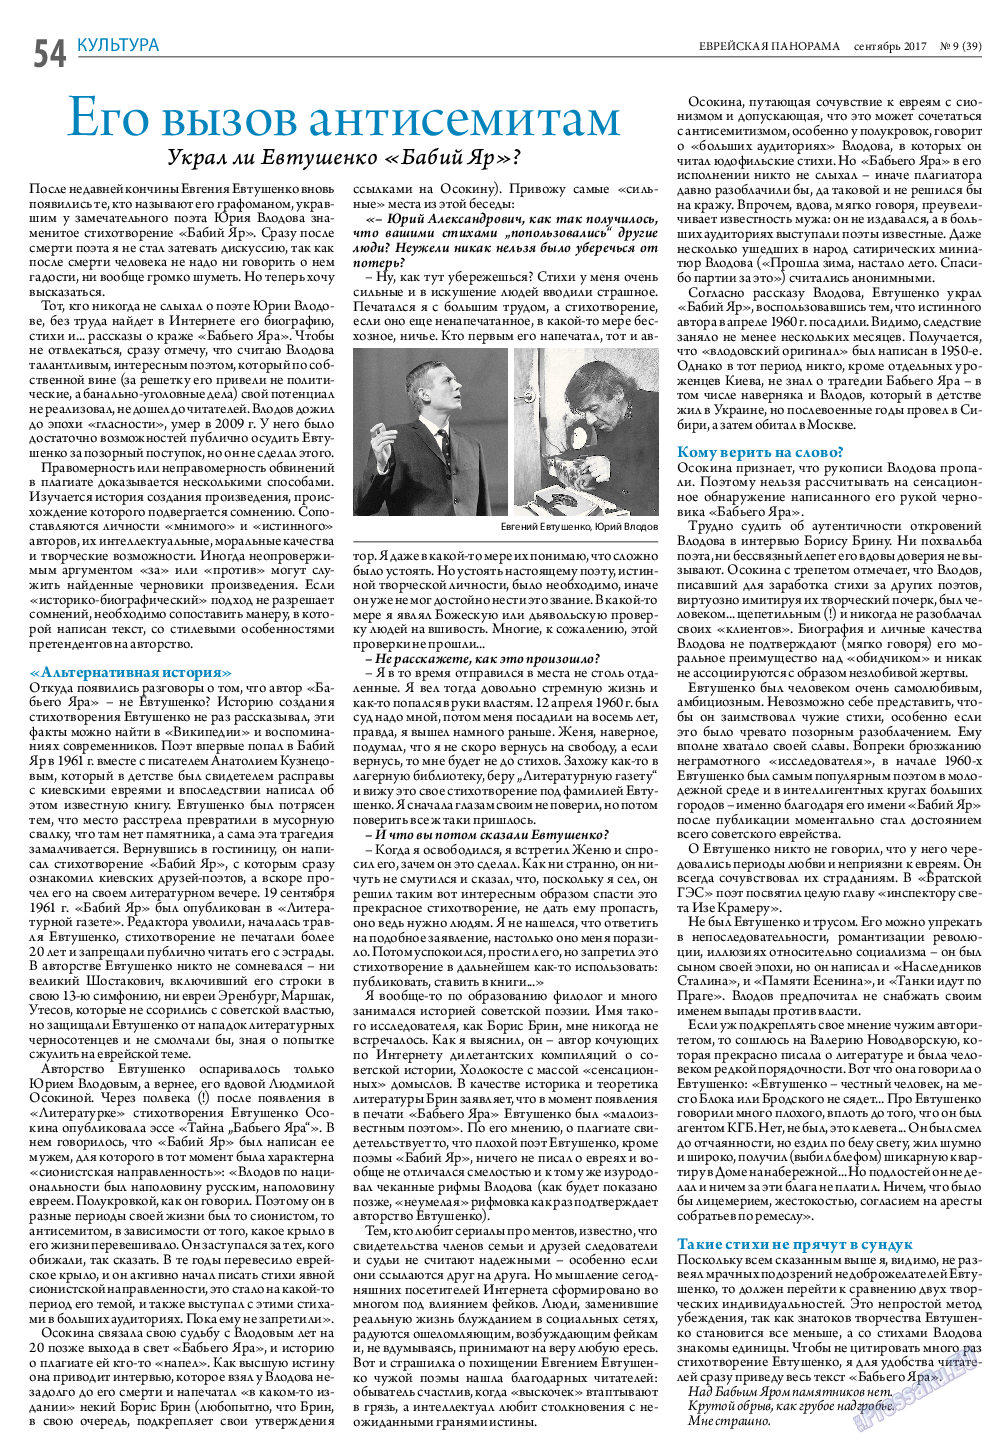 Еврейская панорама (газета). 2017 год, номер 9, стр. 54